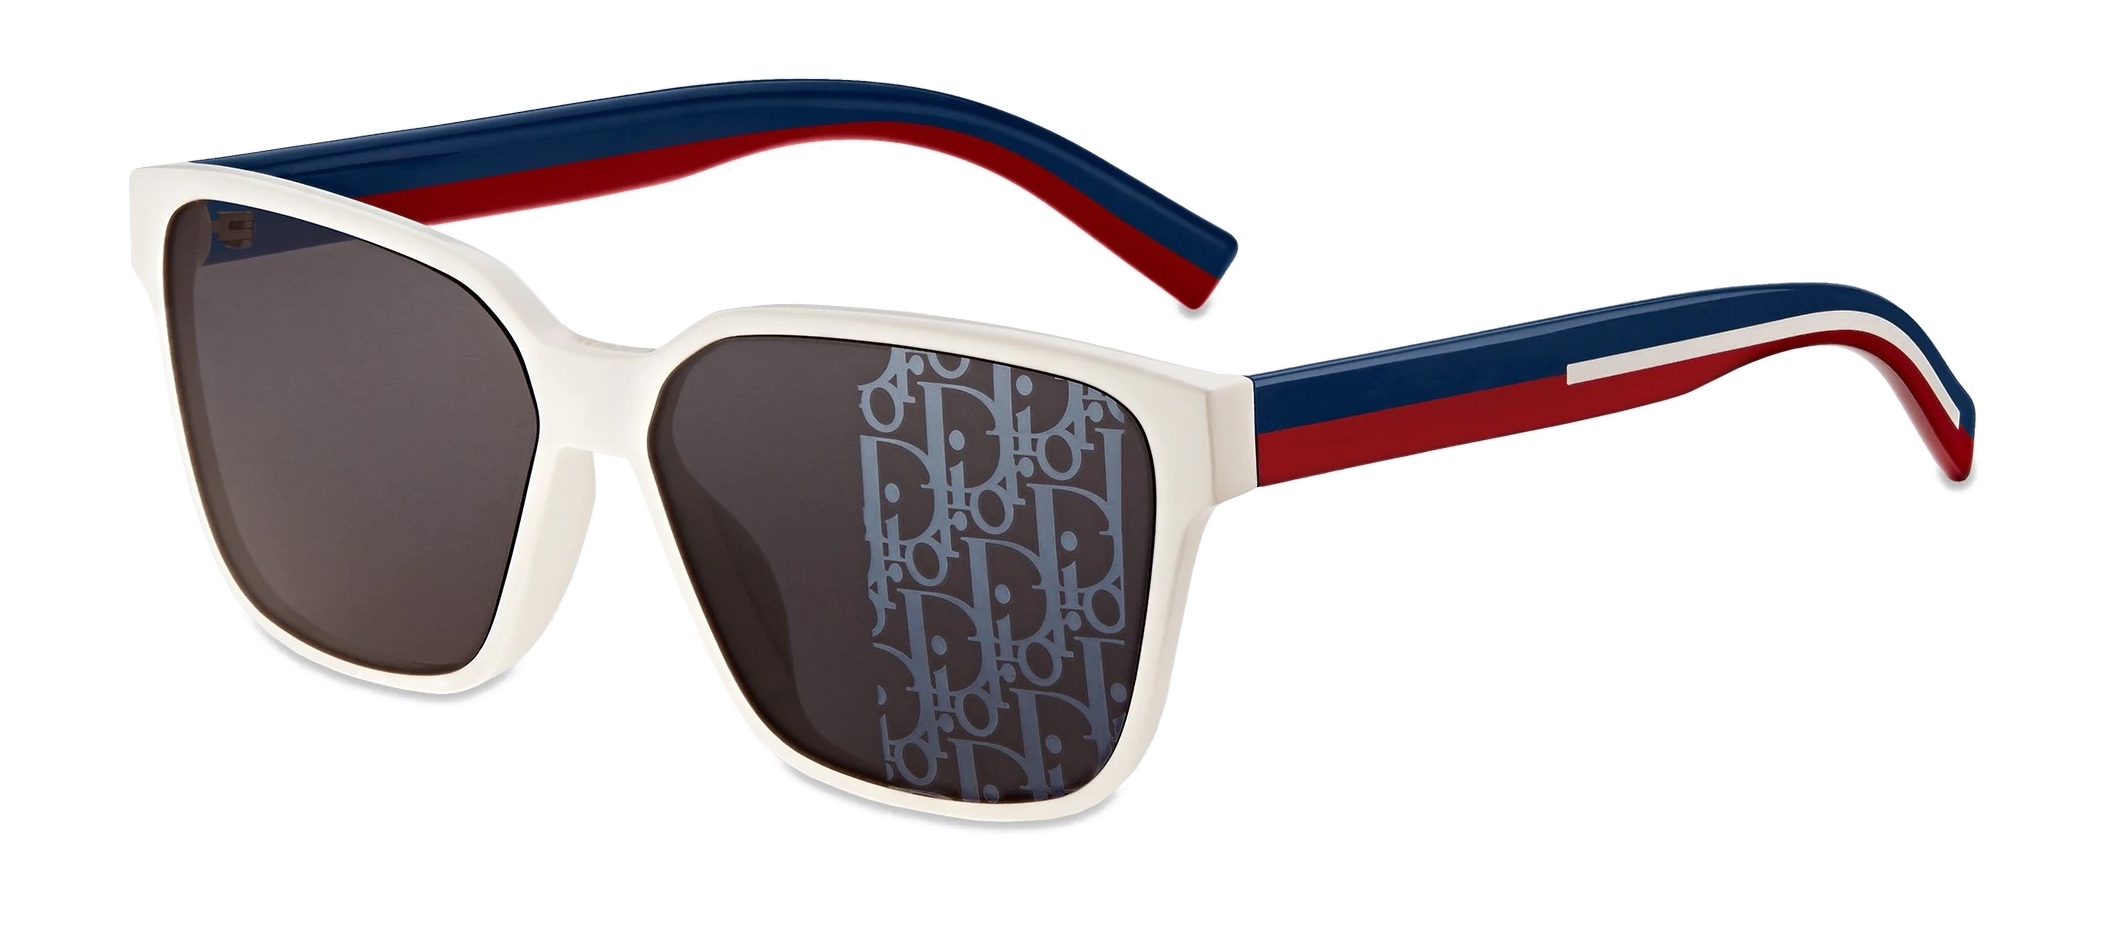 dior sunglasses white frame